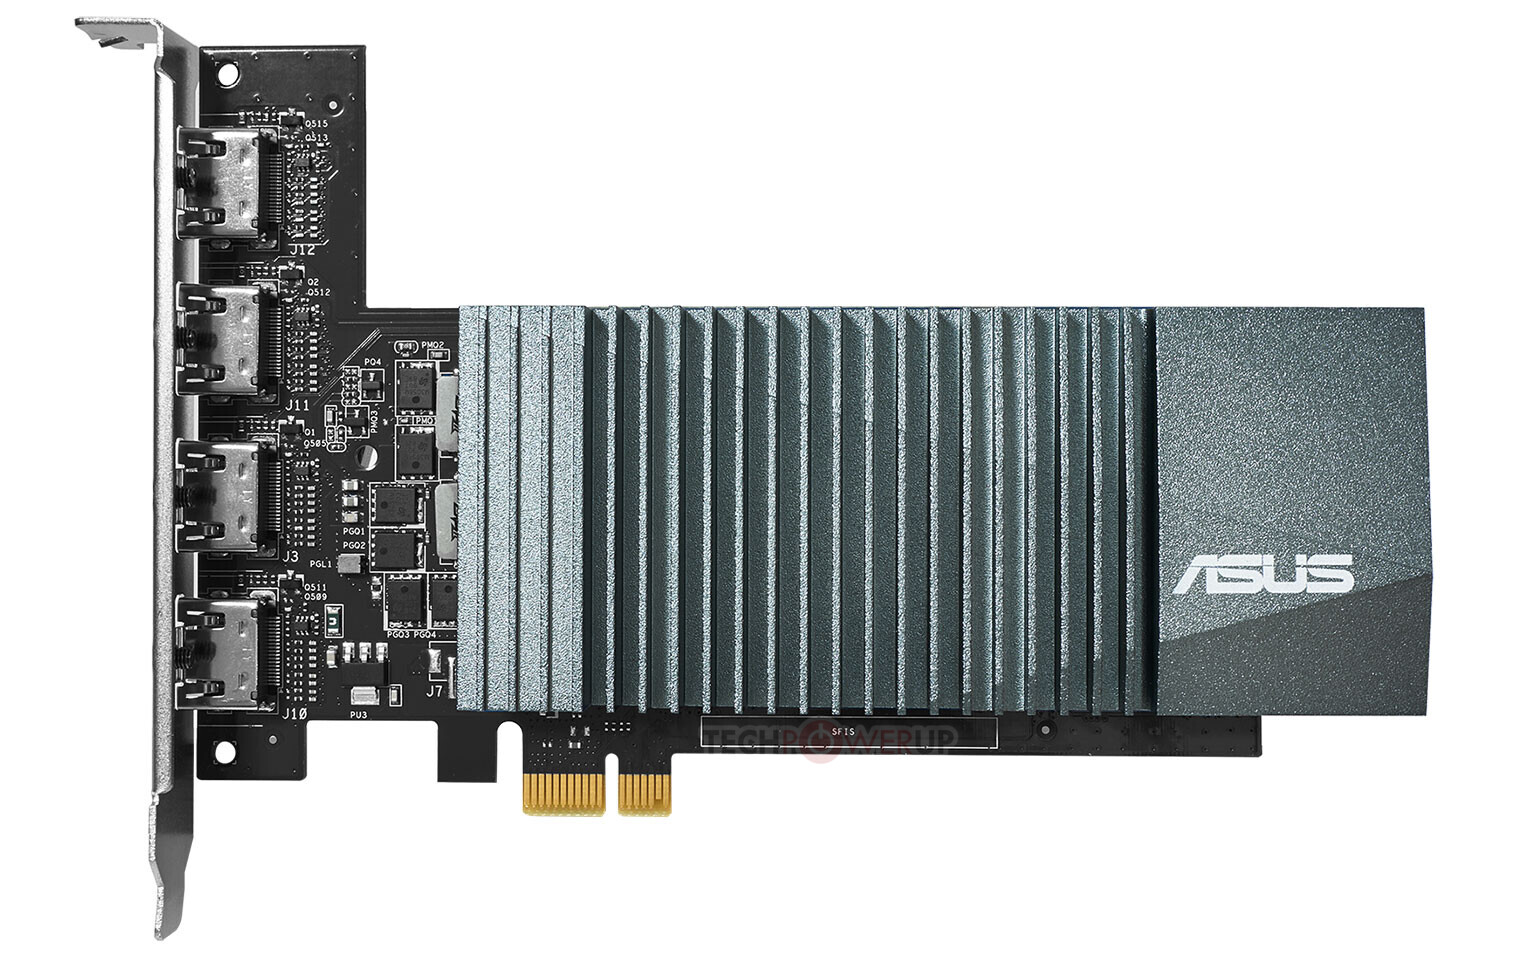 Immagine pubblicata in relazione al seguente contenuto: ASUS lancia una video card GeForce GT 710 dotata di quattro uscite HDMI | Nome immagine: news30644_ASUS-GeForce-GT-710_2.jpg